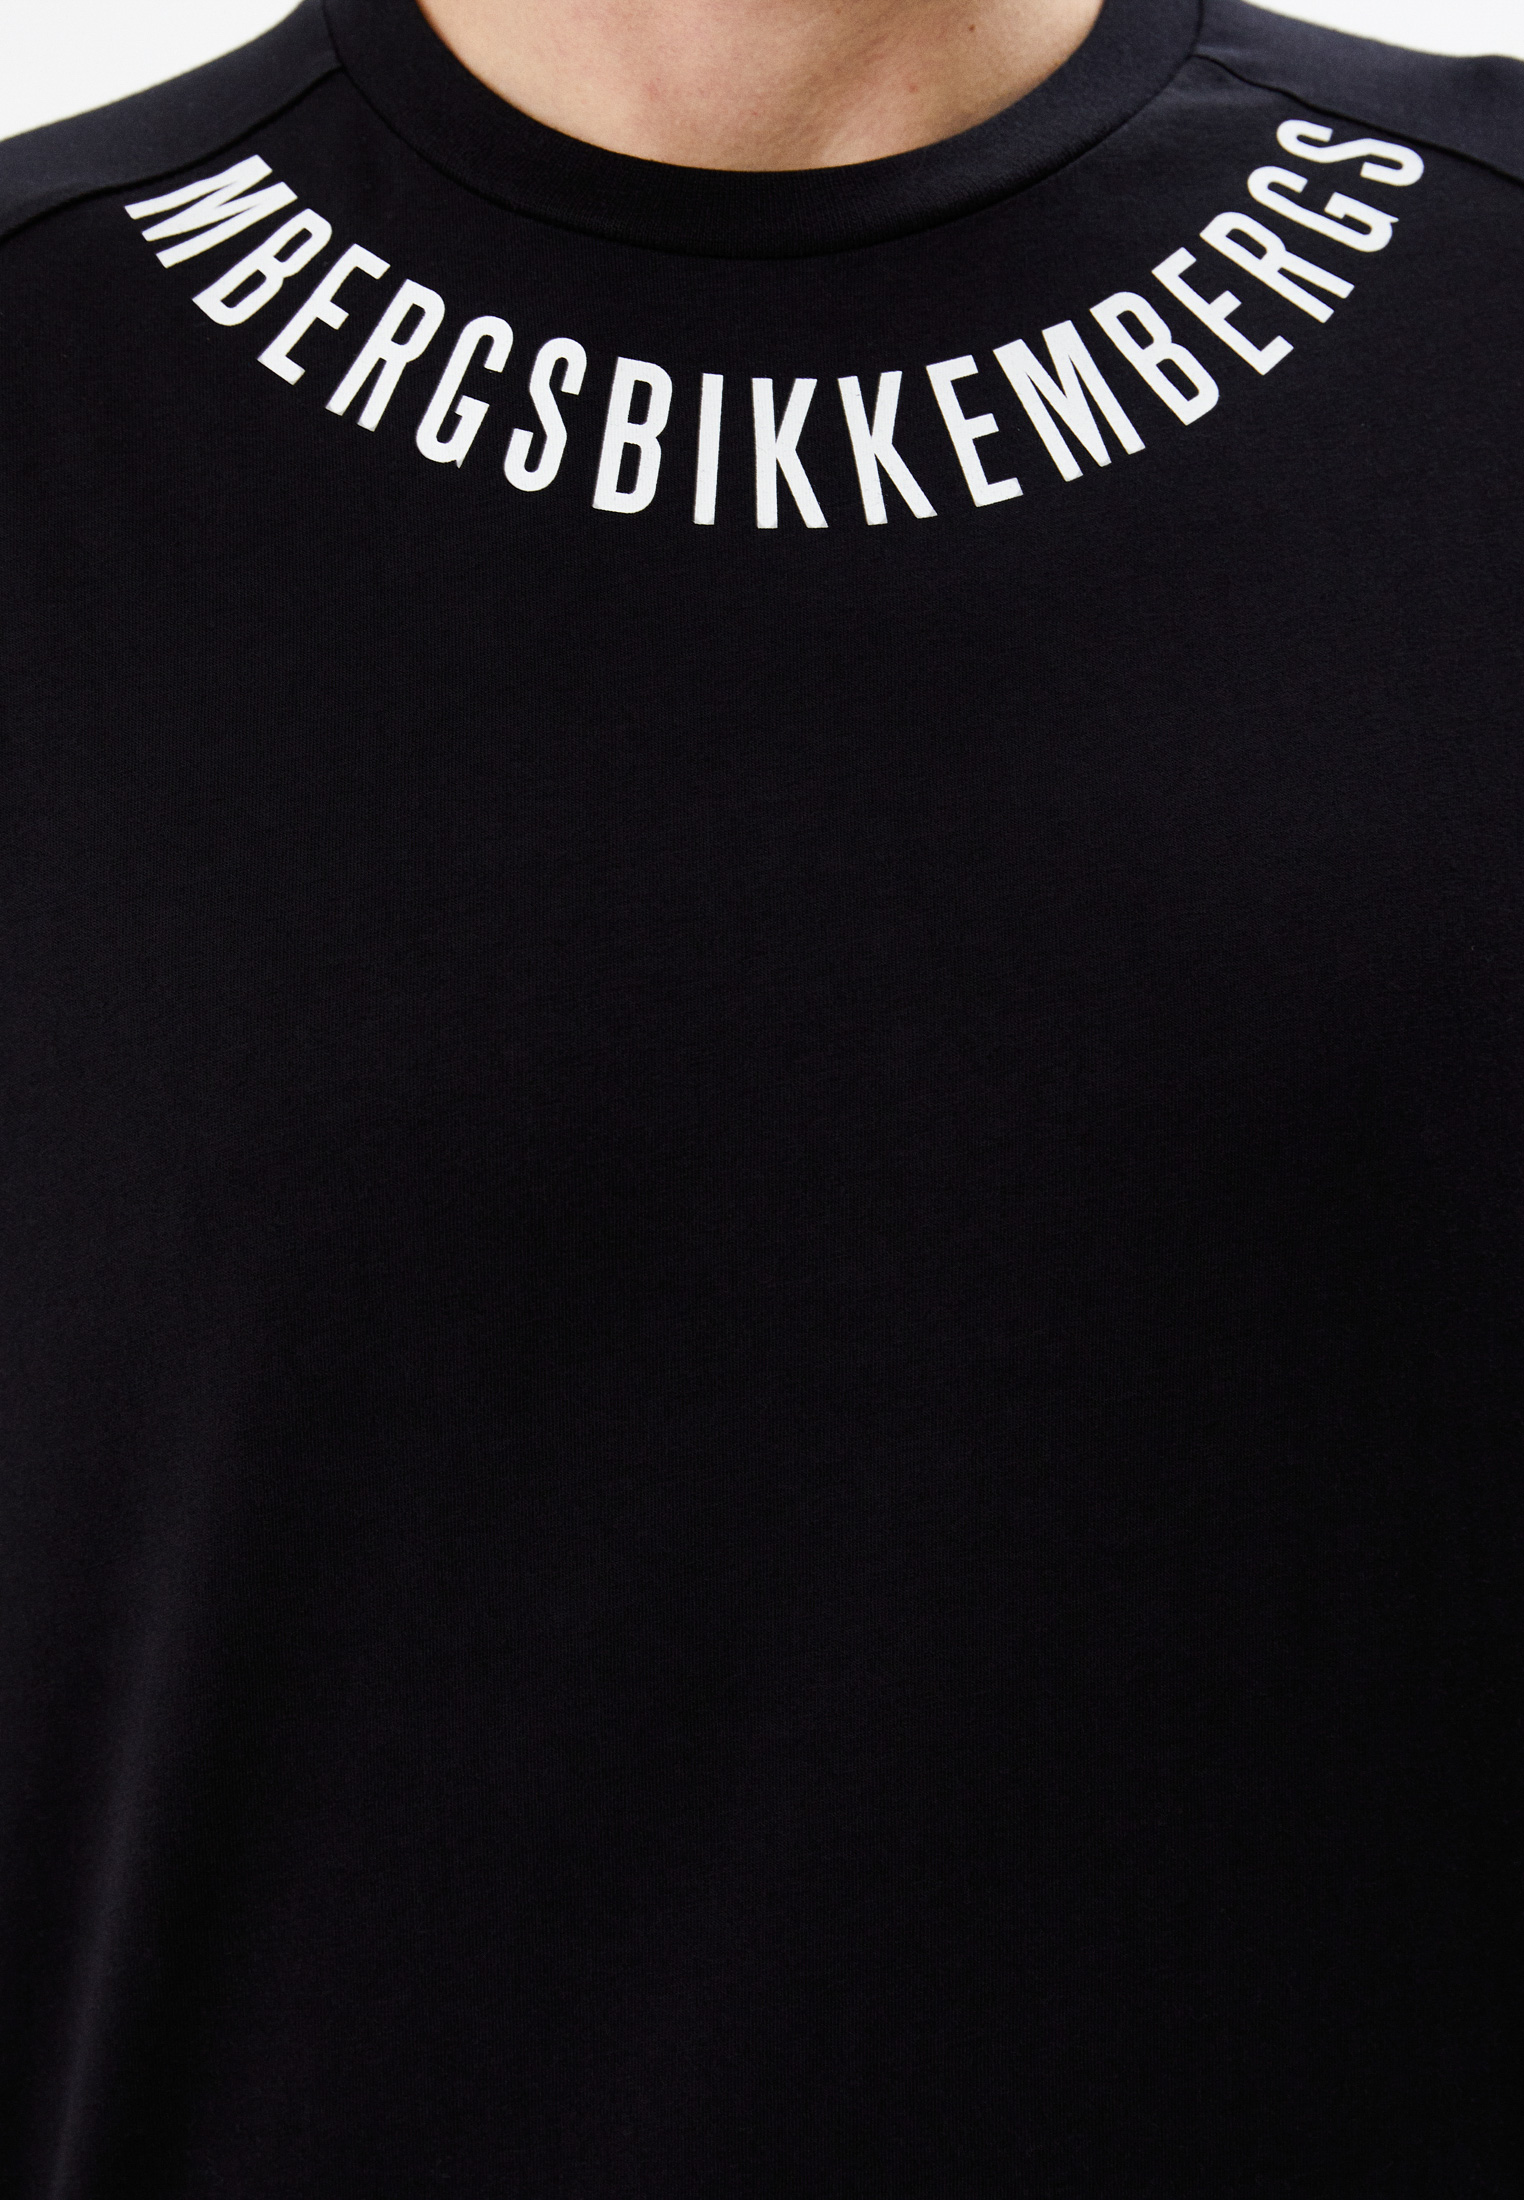 Мужская футболка Bikkembergs (Биккембергс) C 4 149 01 M 4349: изображение 4